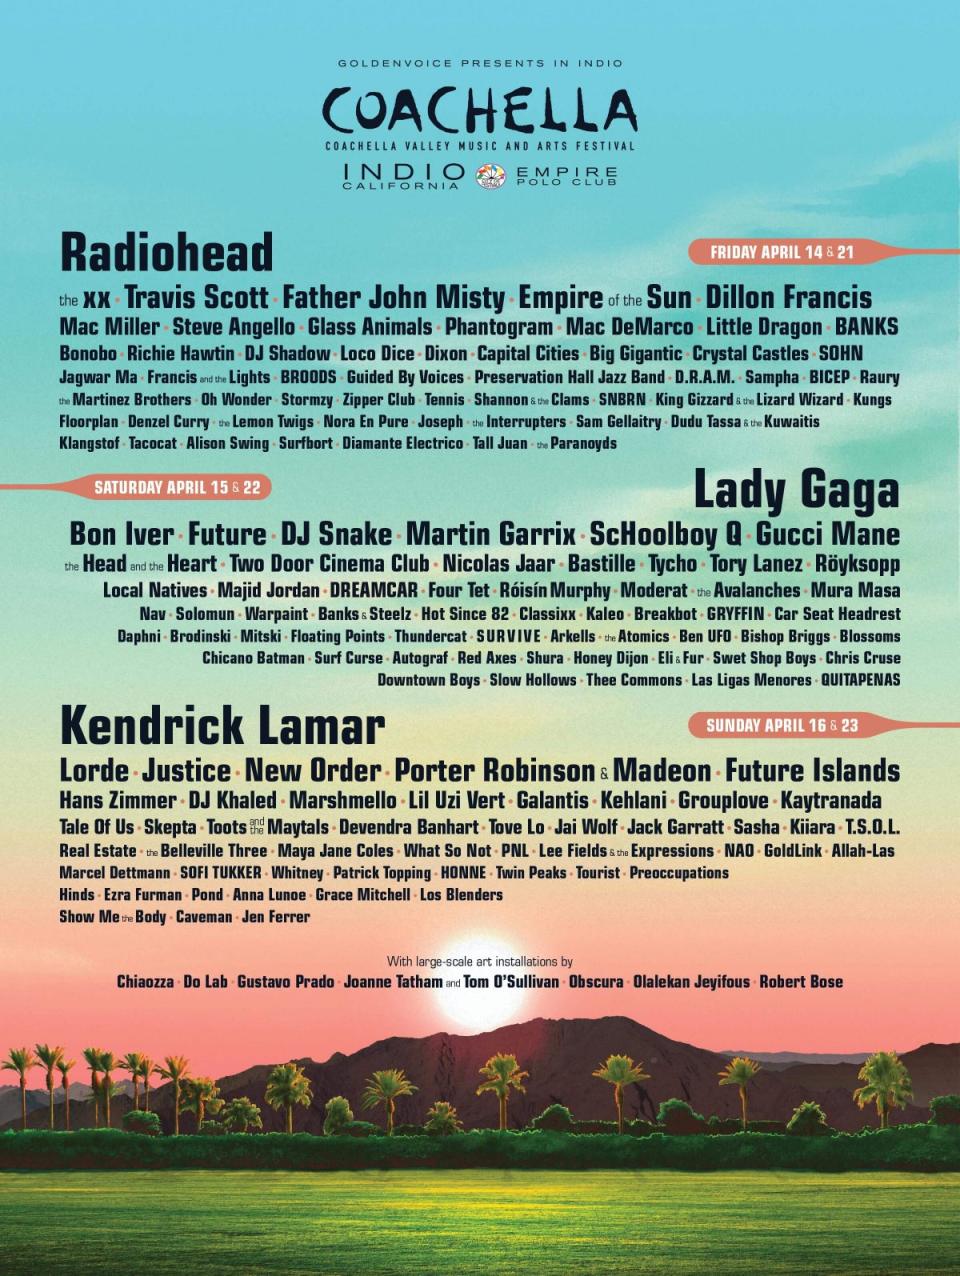 Coachella 2017 poster (Coachella.com)